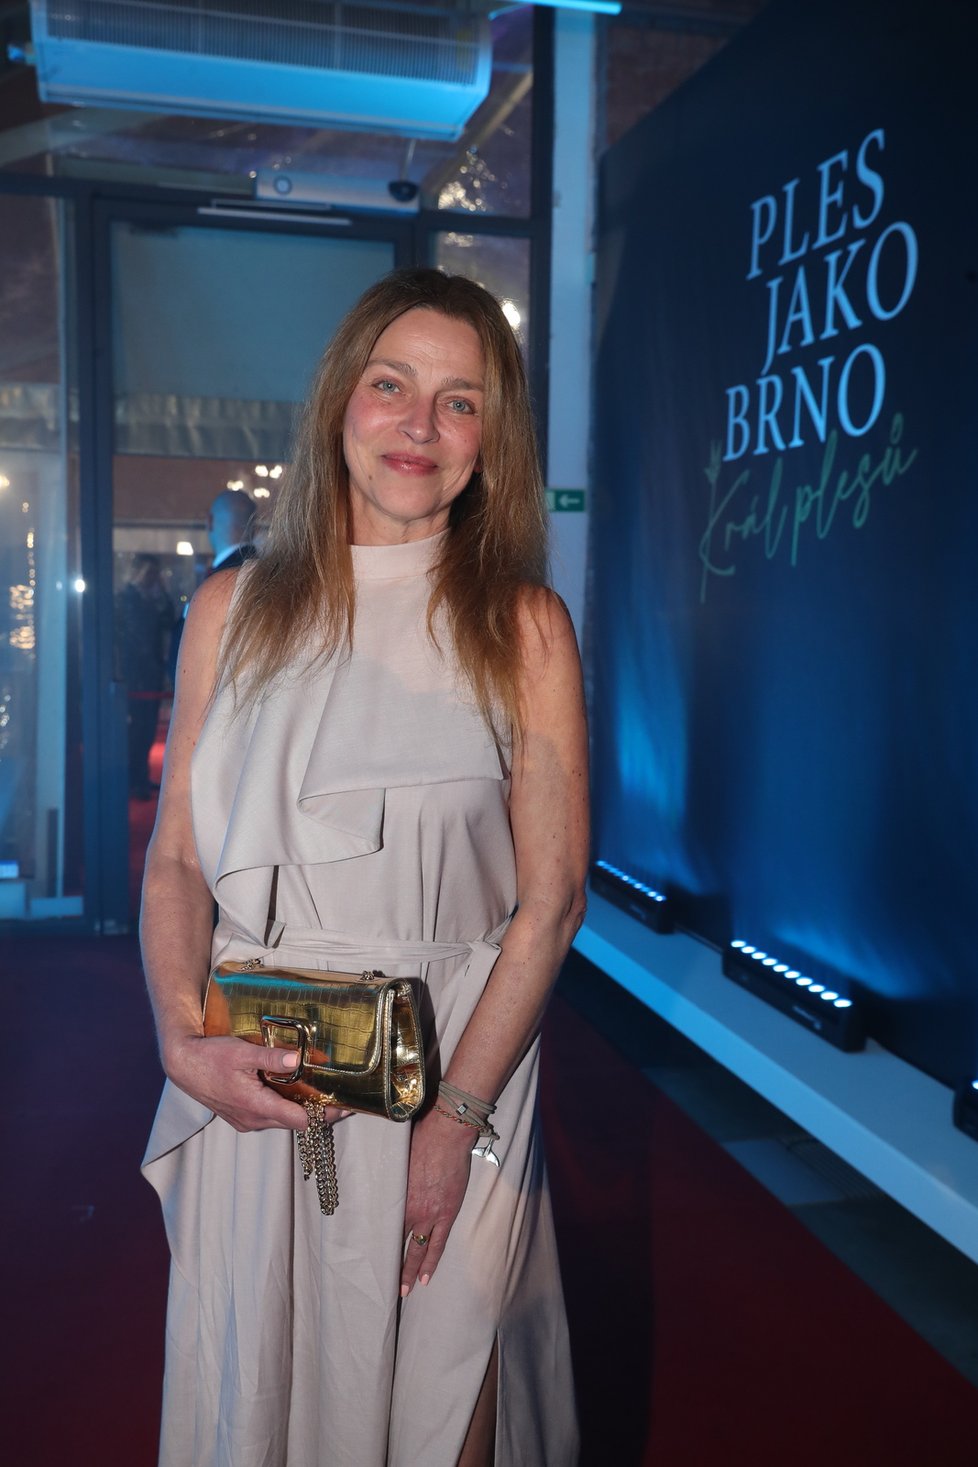 Ples jako Brno 2024: Lucie Zedníčková